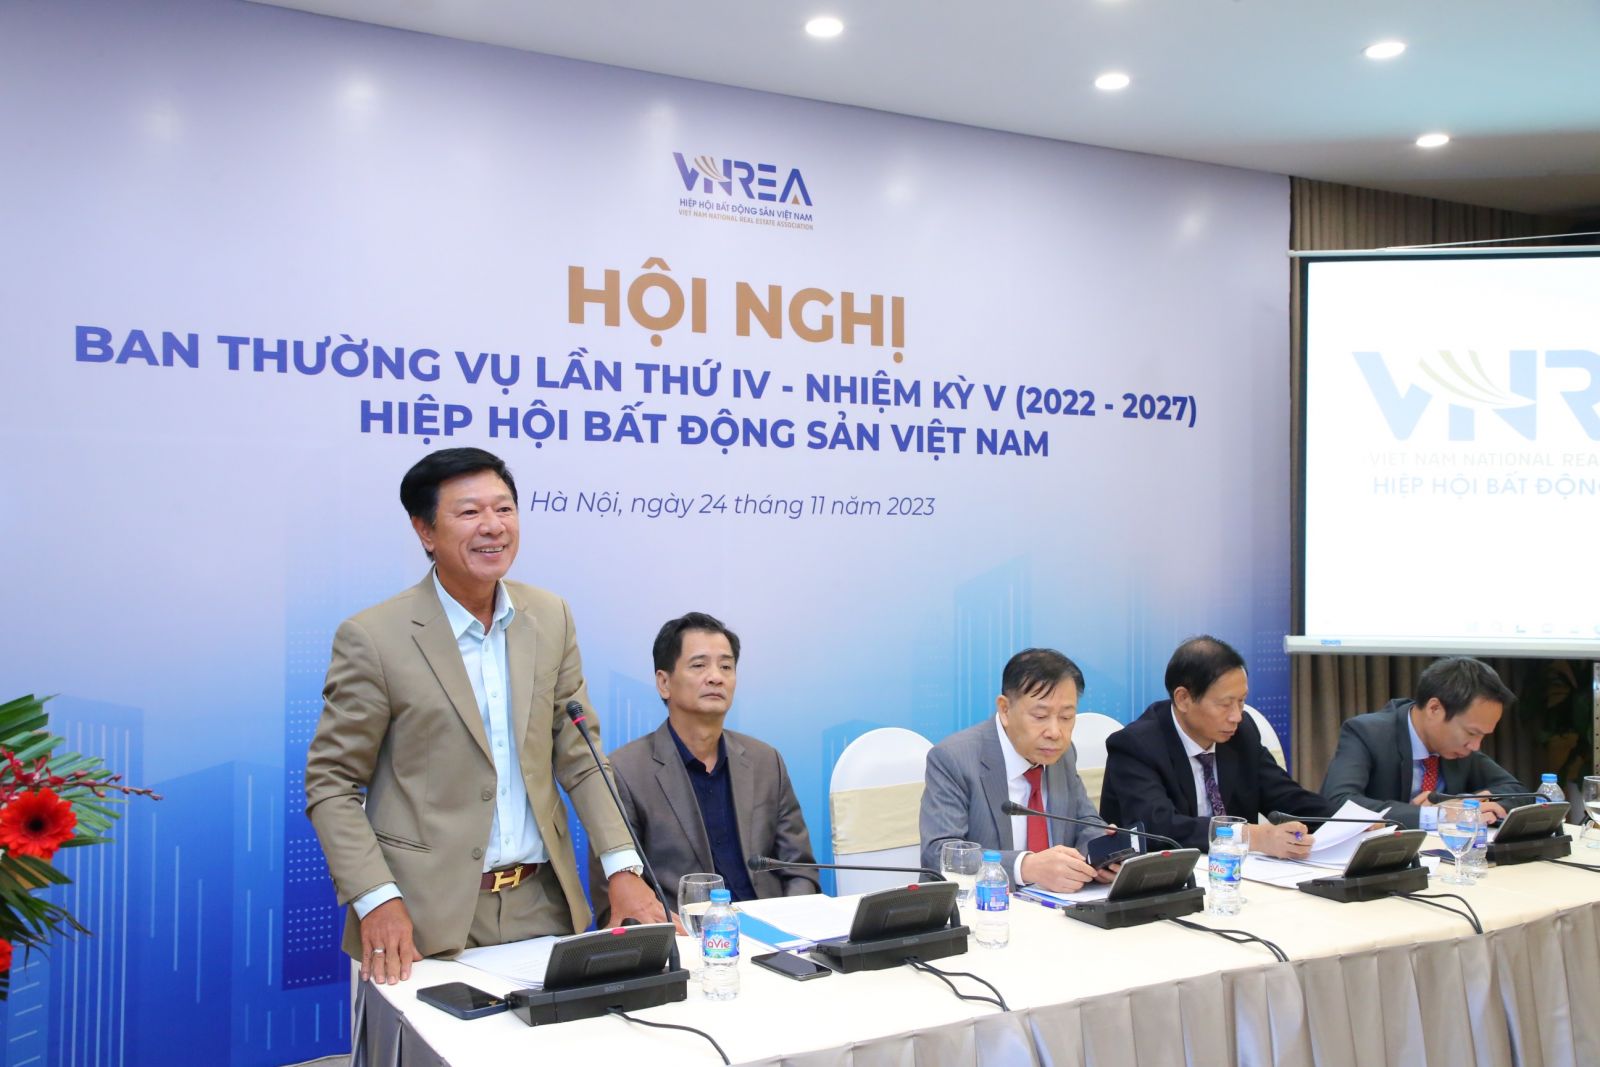 Hội nghị Ban Thường vụ Hiệp hội Bất động sản Việt Nam lần thứ IV nhiệm kỳ 2022 - 2027 - Ảnh 5.